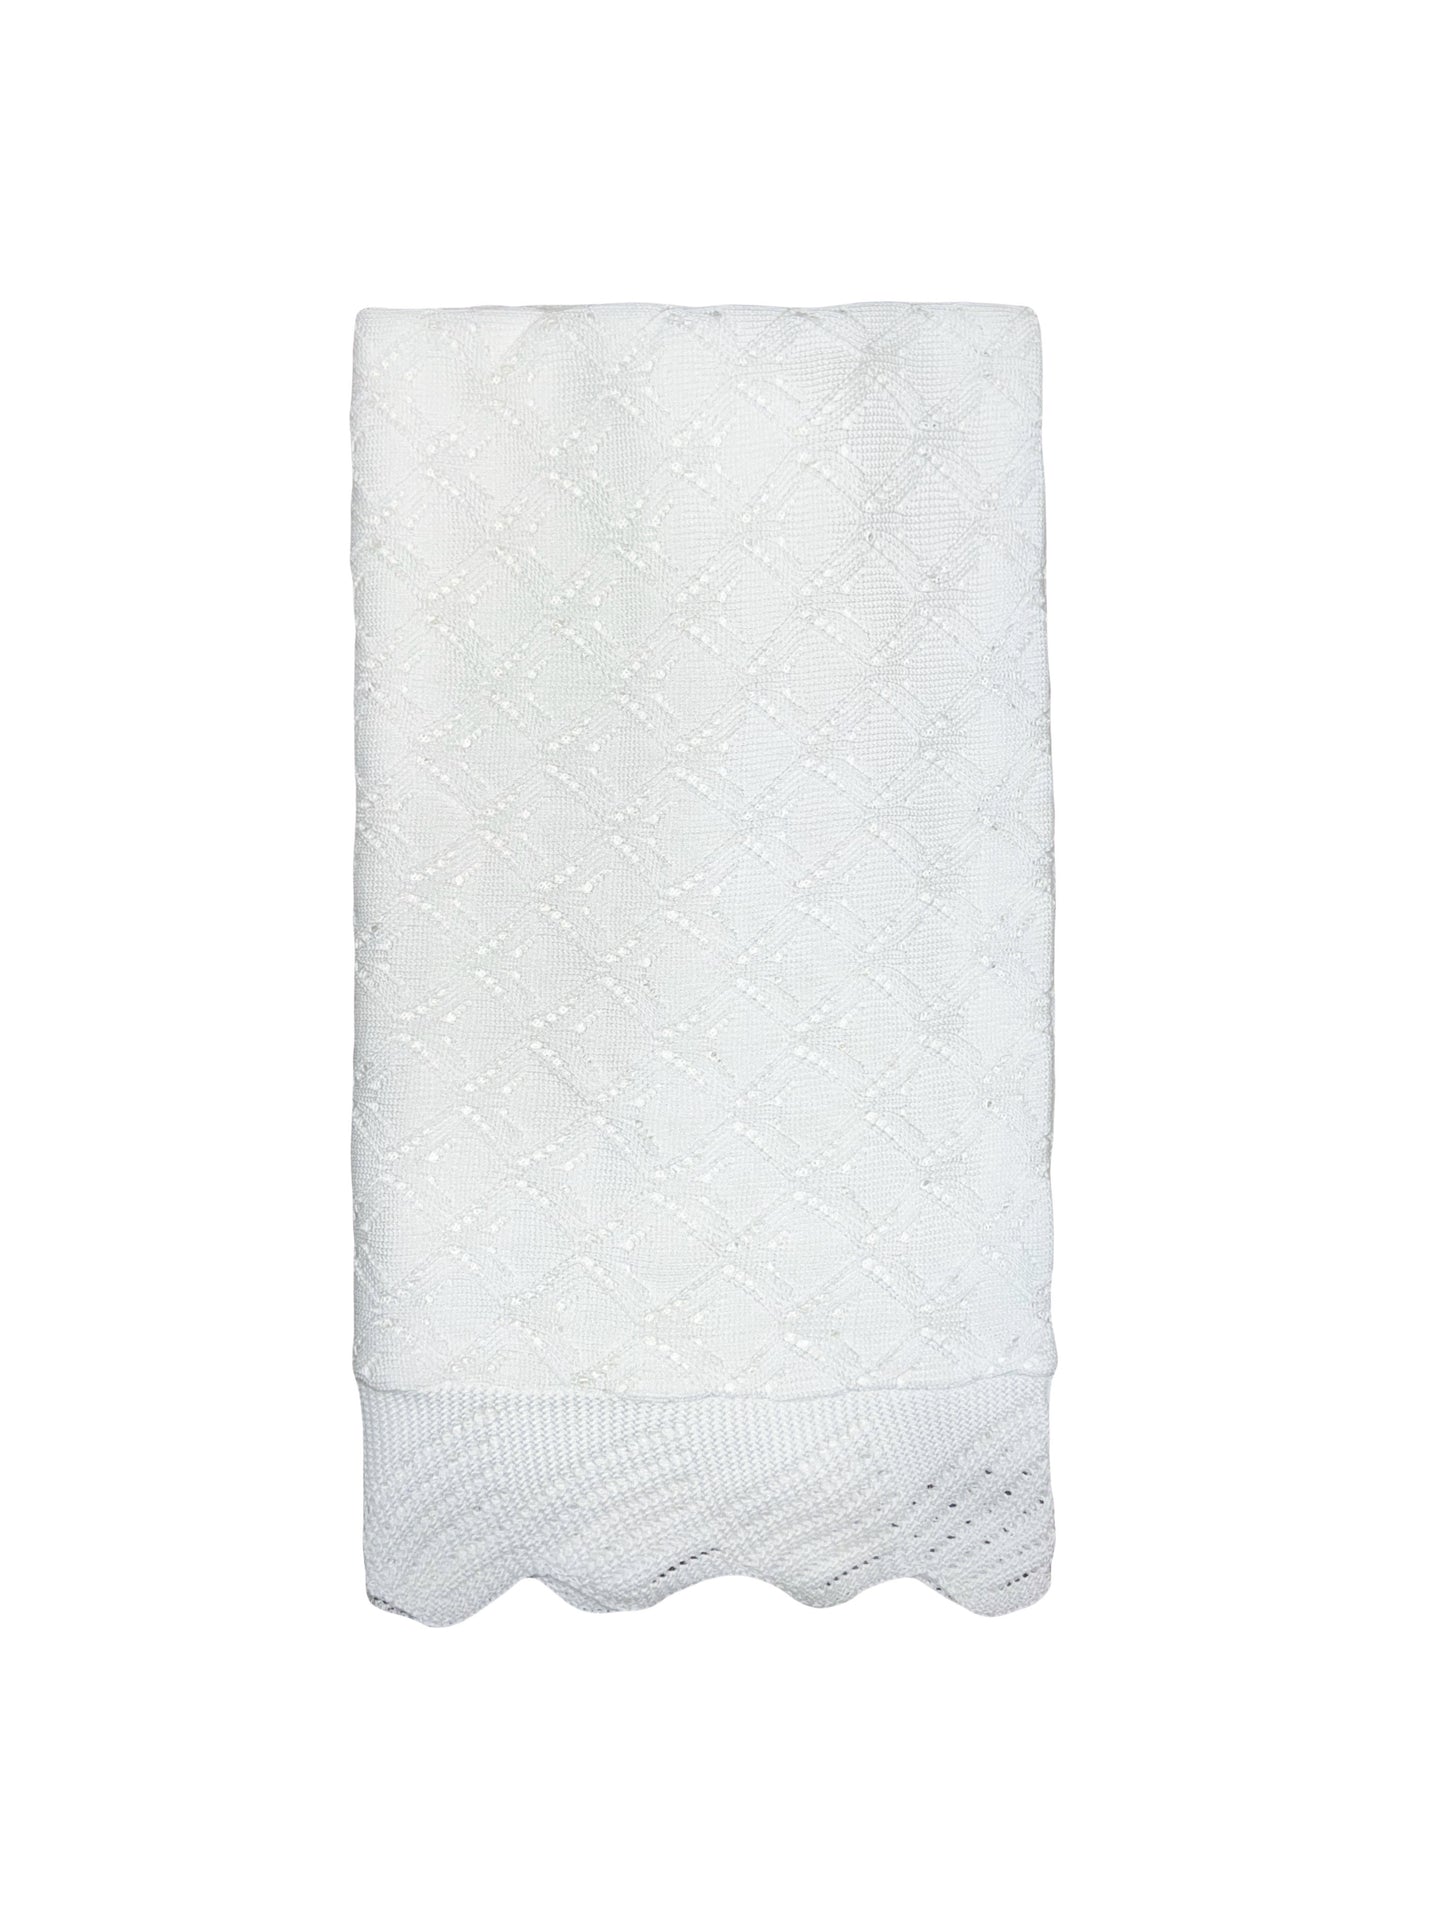 White Knit Soft Baby Blanket